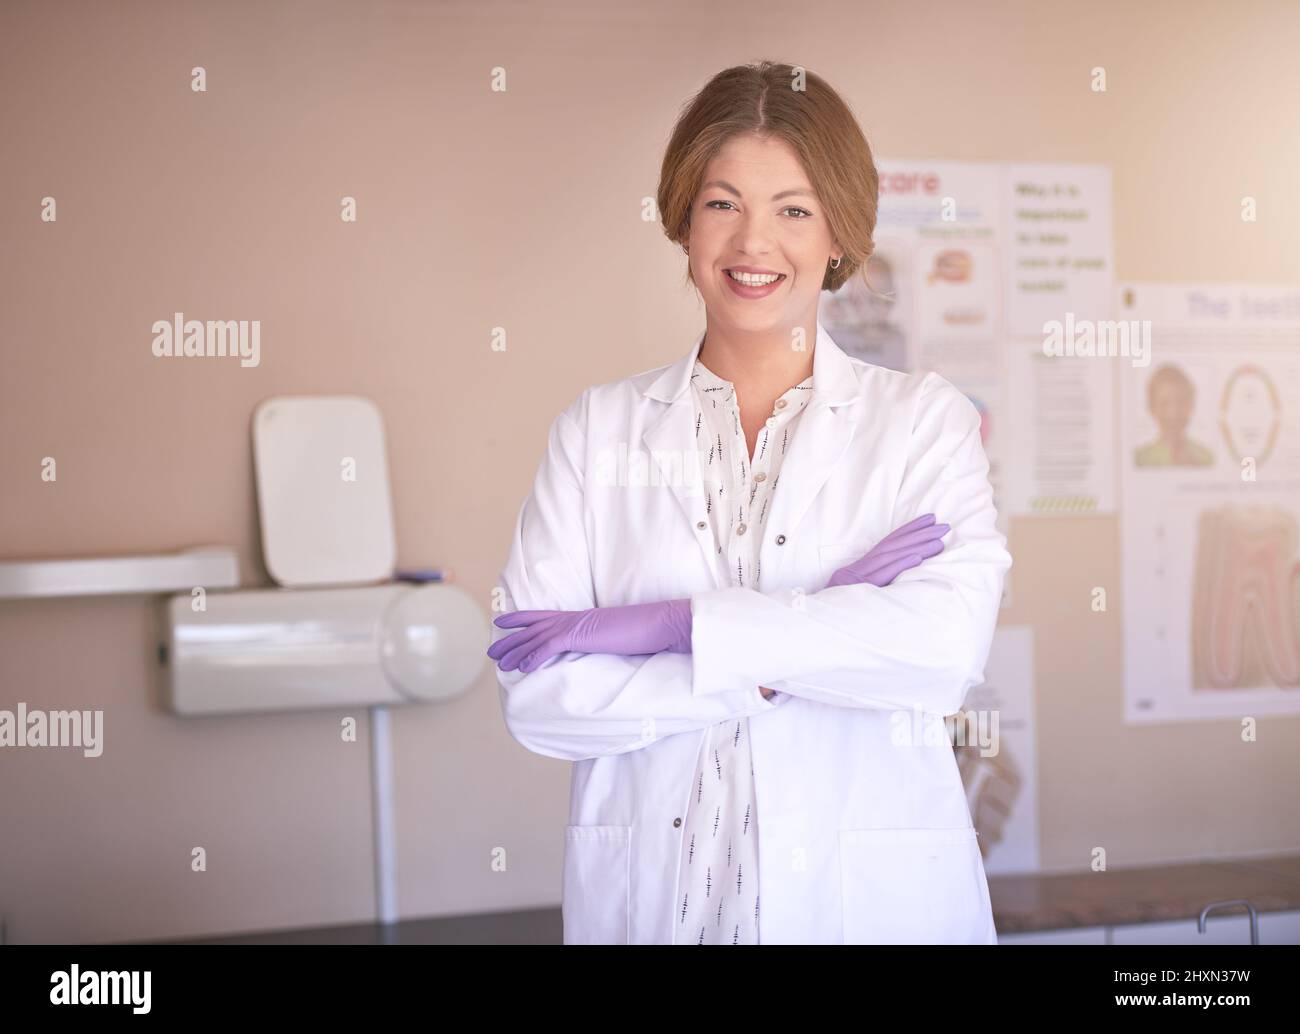 Ill migliora il tuo sorriso aspetto con piacere. Ritratto di una dentista femminile in piedi nel suo ufficio con le braccia incrociate. Foto Stock